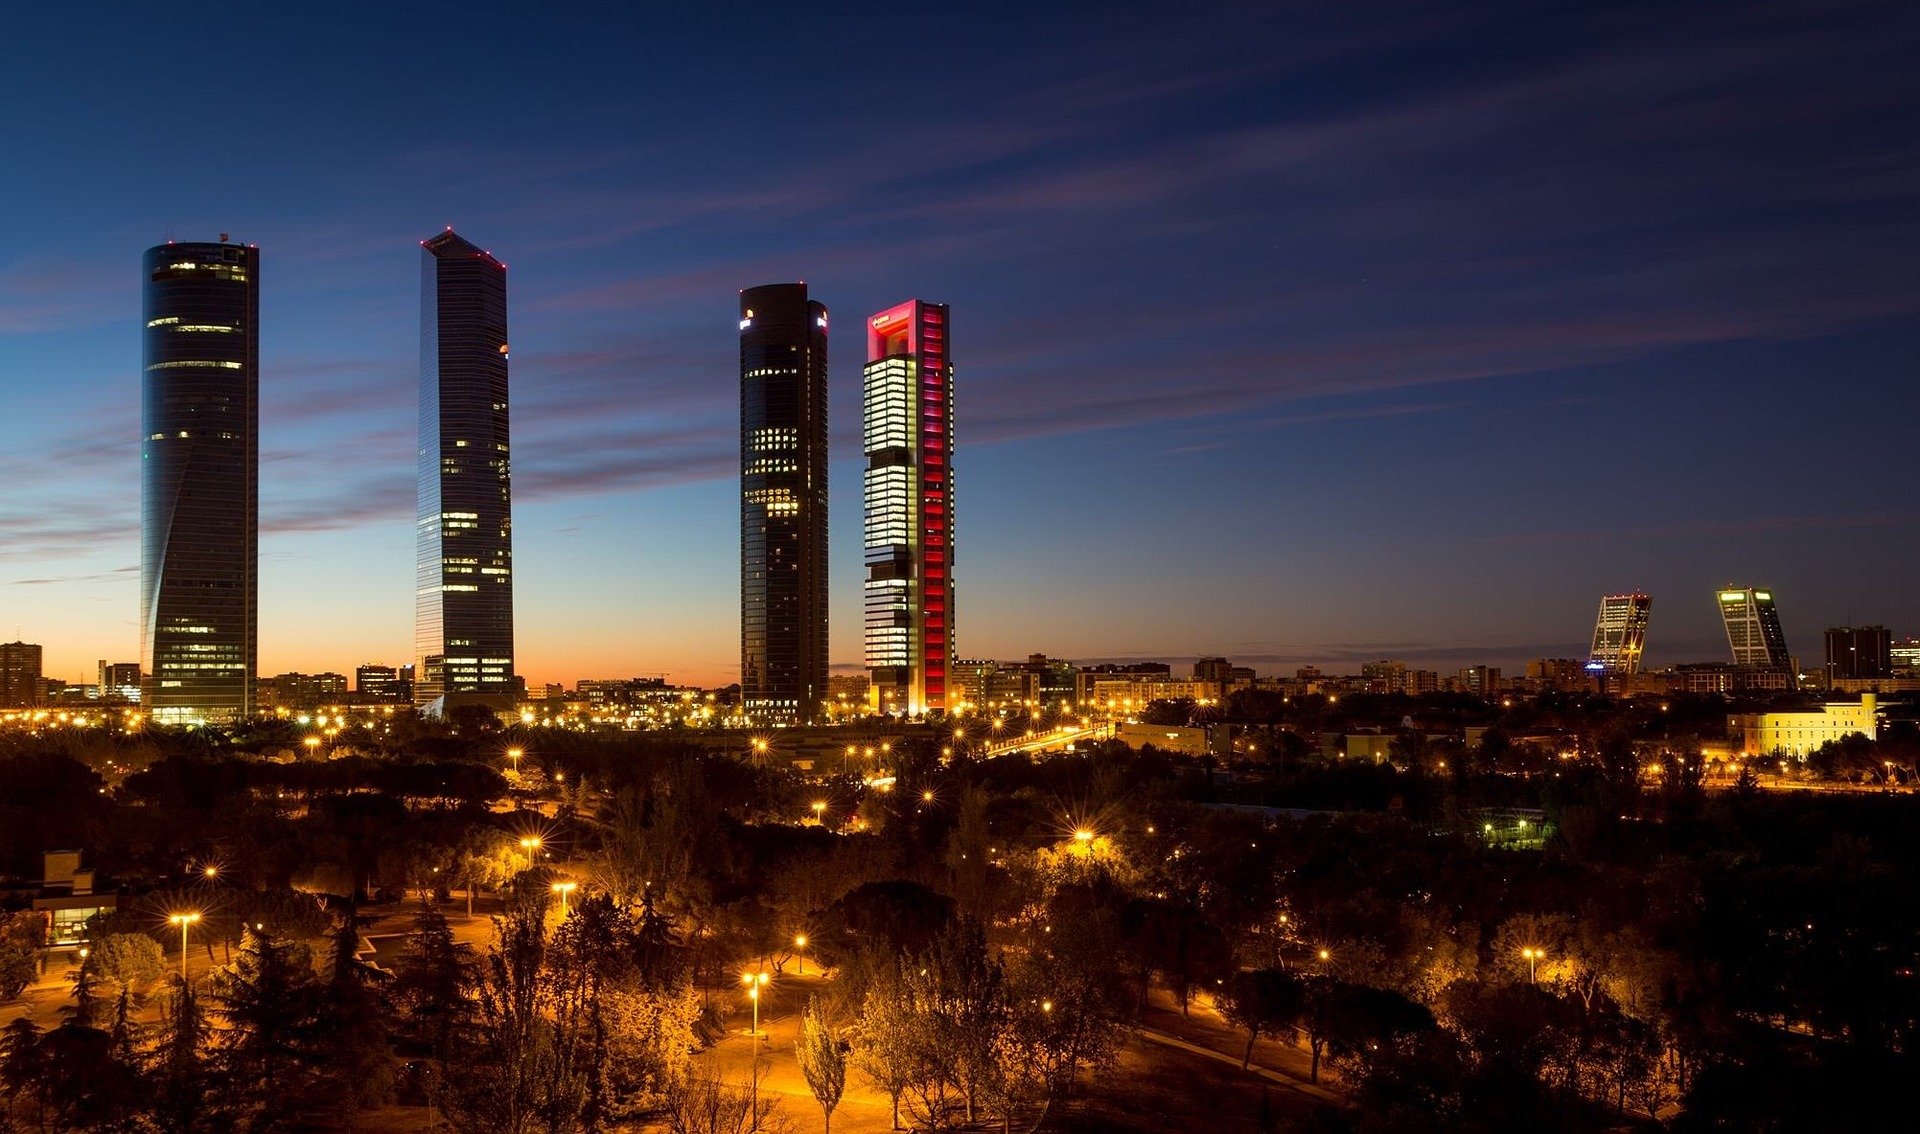 Atardecer en Madrid con las 4 Torres y las Torres Kio de fondo